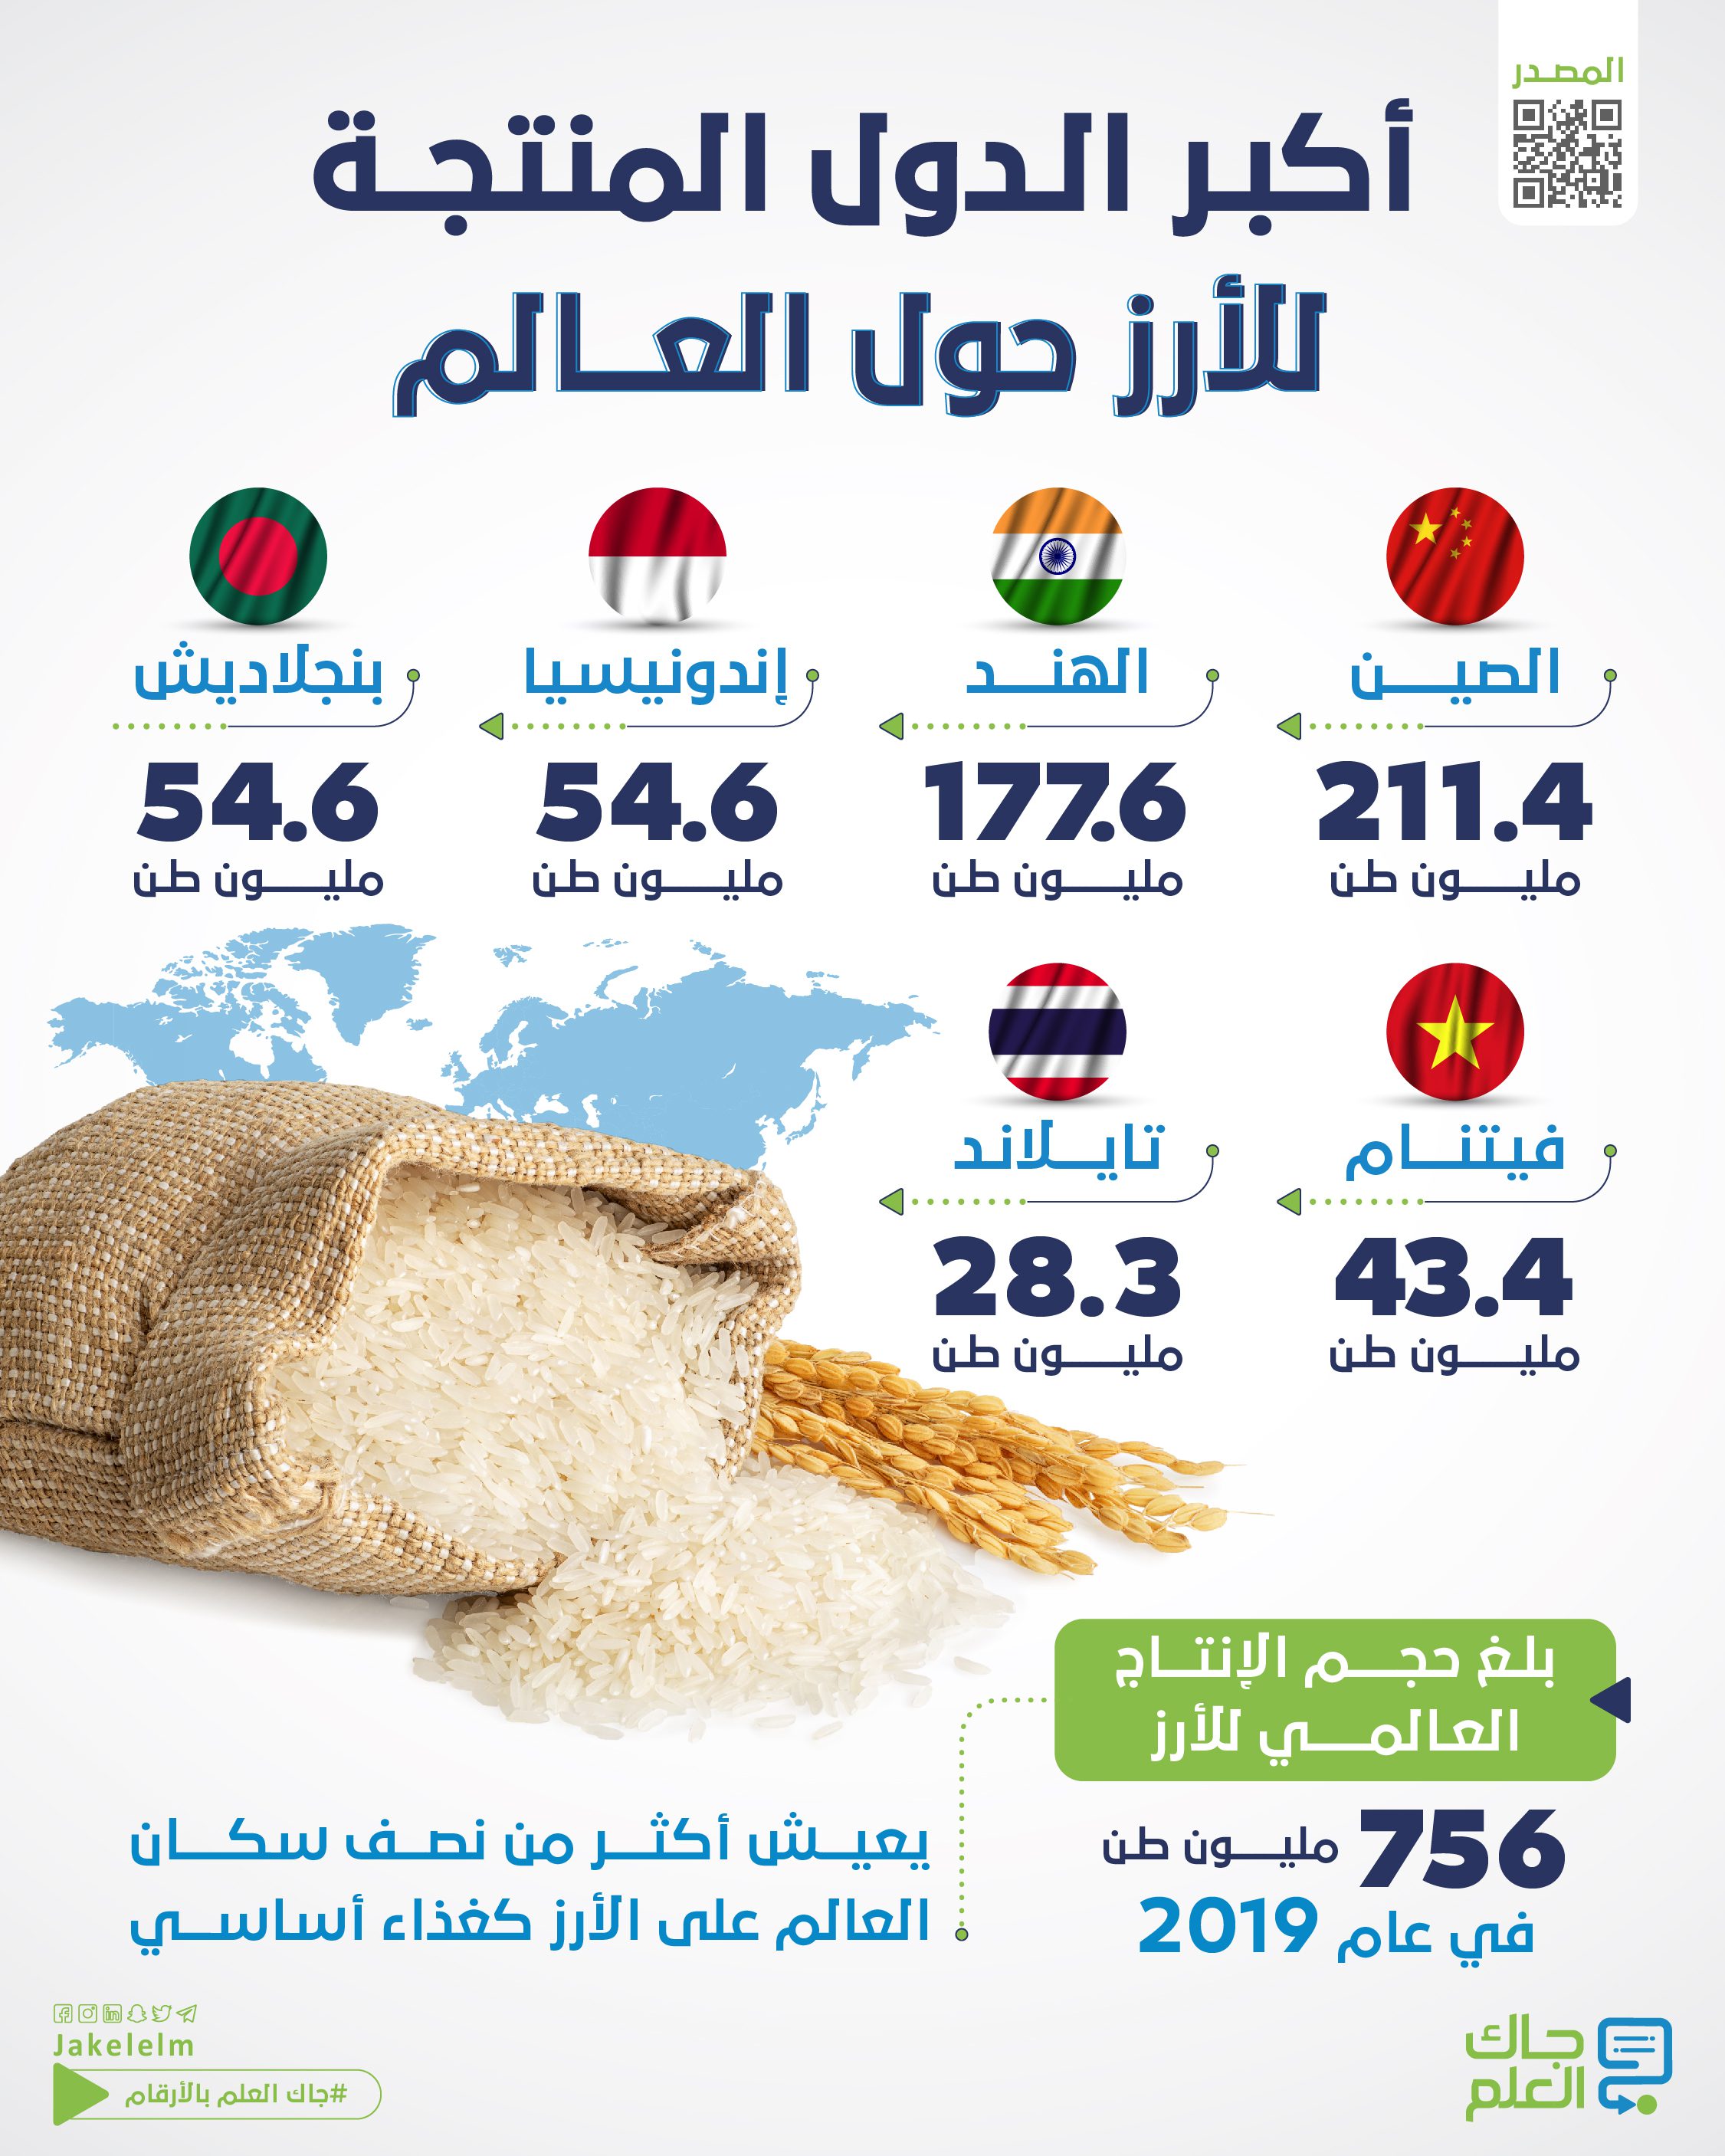 أكبر الدول المنتجة للأرز